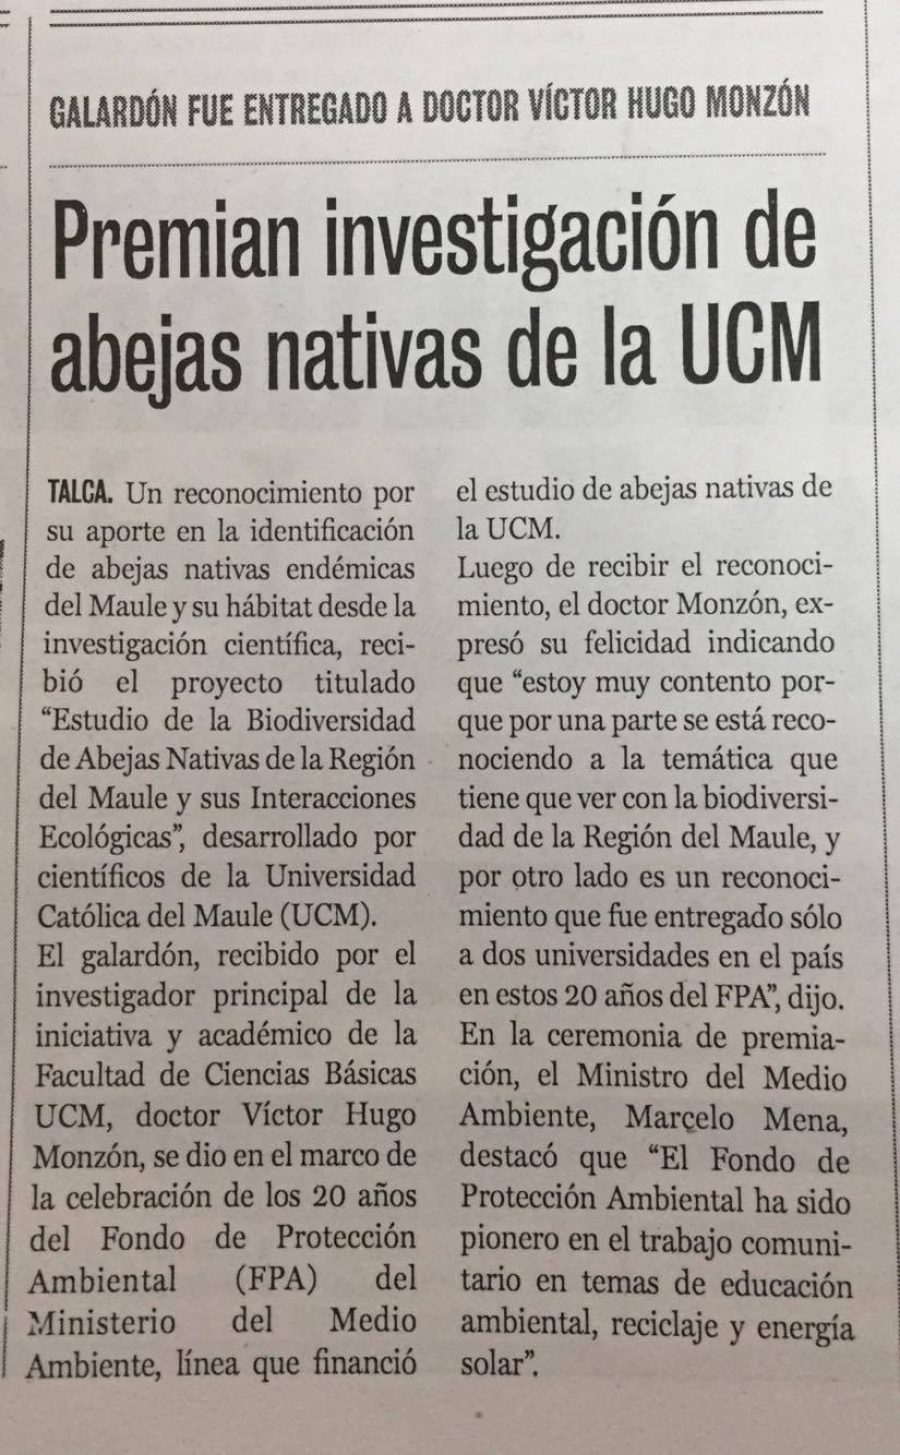 28 de octubre en Diario La Prensa: “Premian investigación de abejas nativas de la UCM”